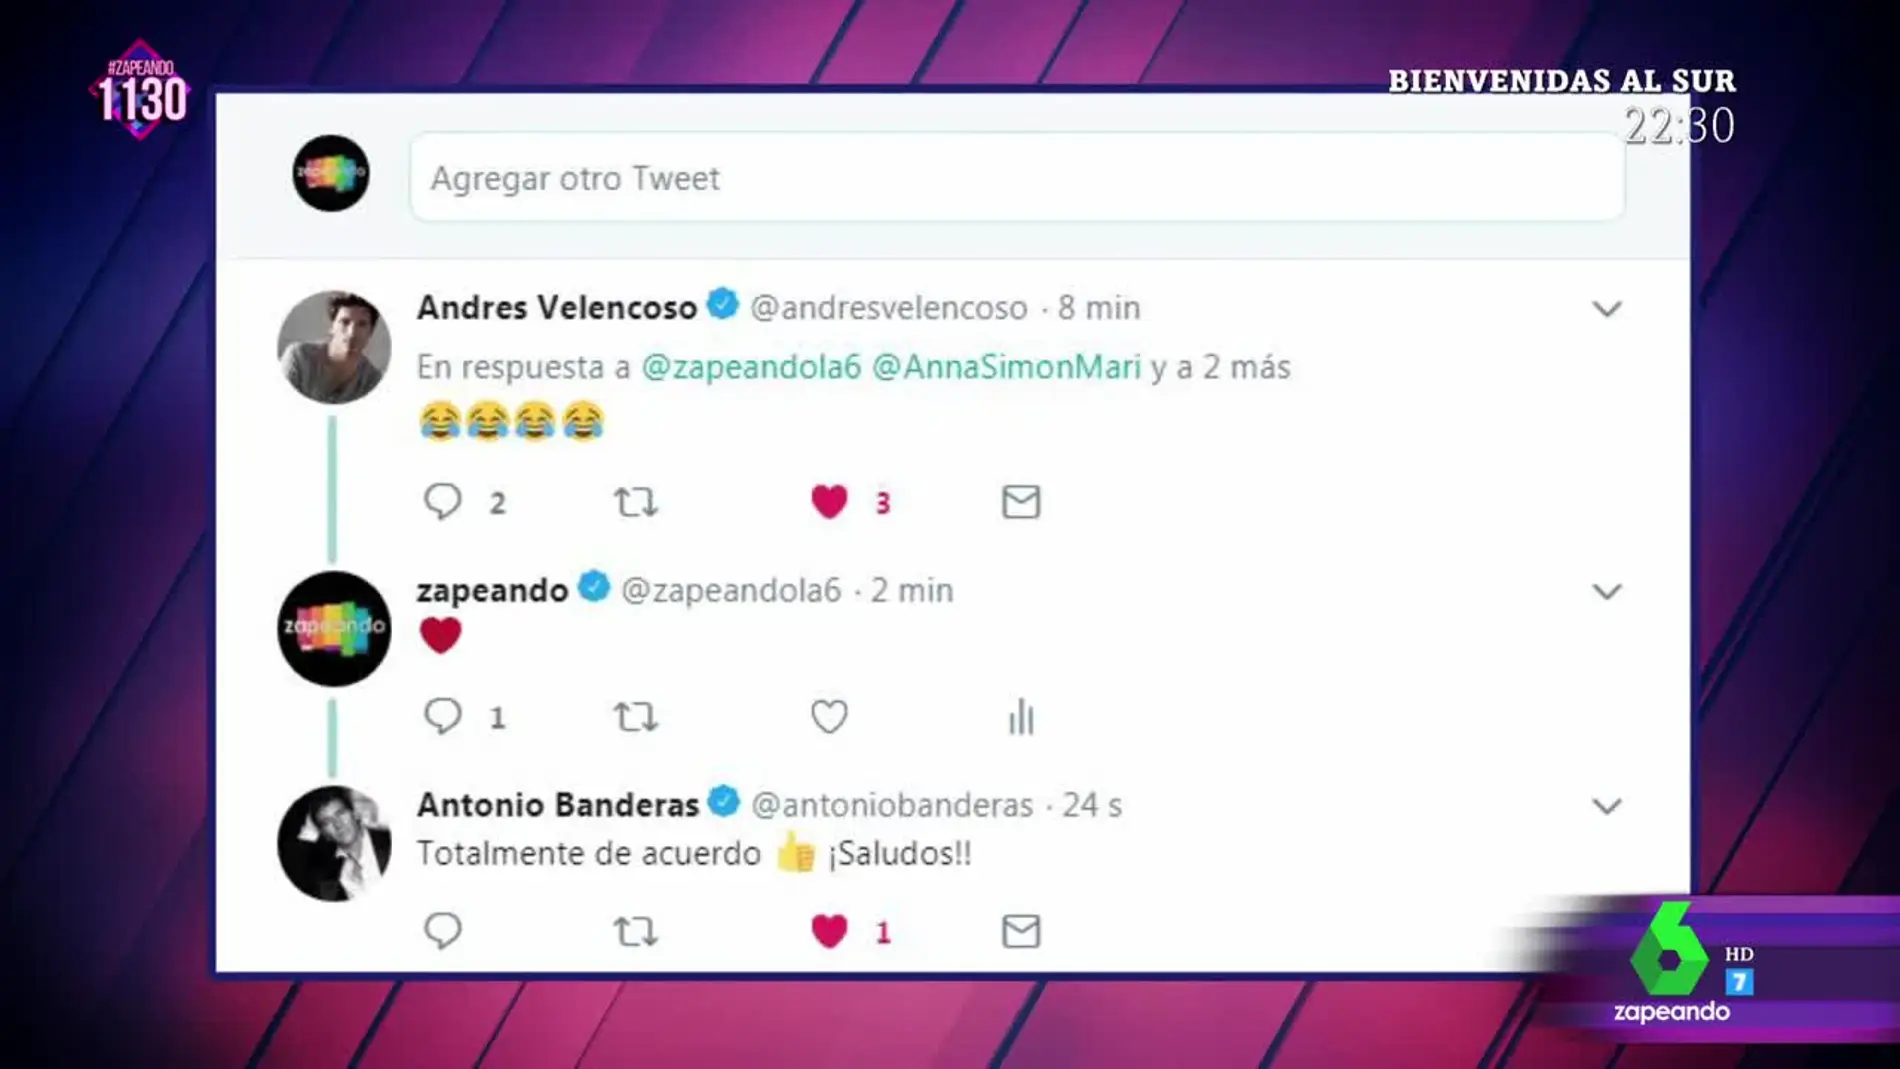 La respuesta de Antonio Banderas y Andres Velencoso a la sugerencia de Zapeando de ser ministros del nuevo Gobierno